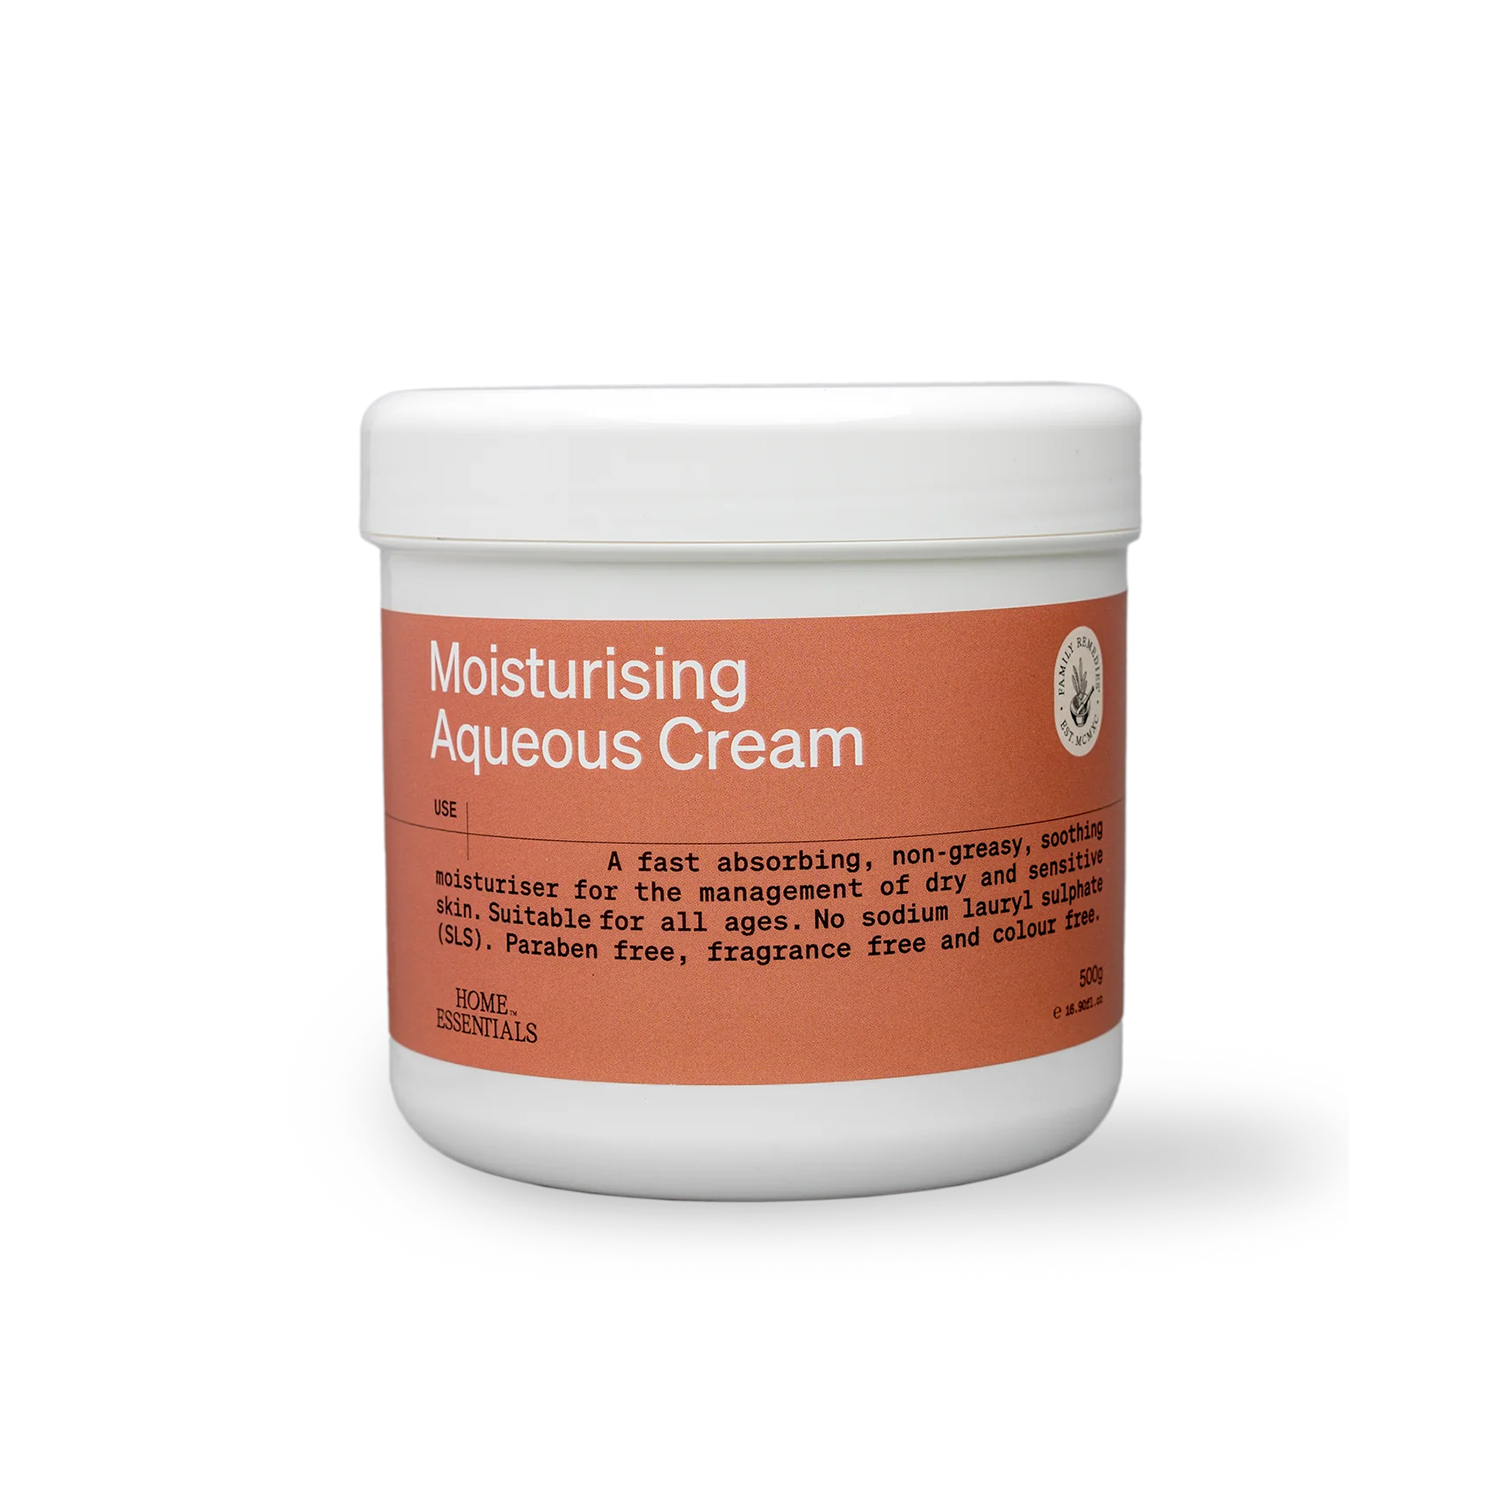 Moisturising Aqueous Cream